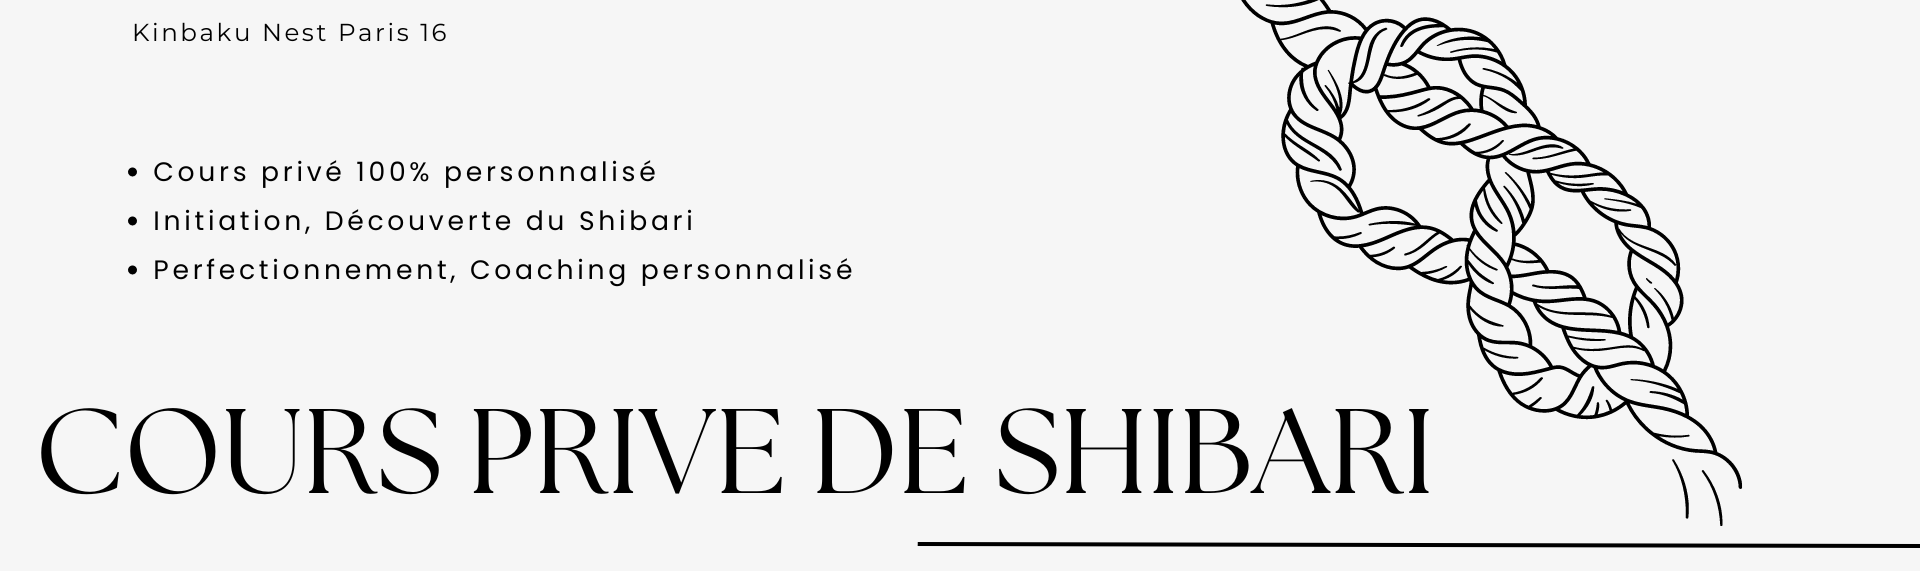 Cours privé de shibari Paris avec Seb Kinbaku